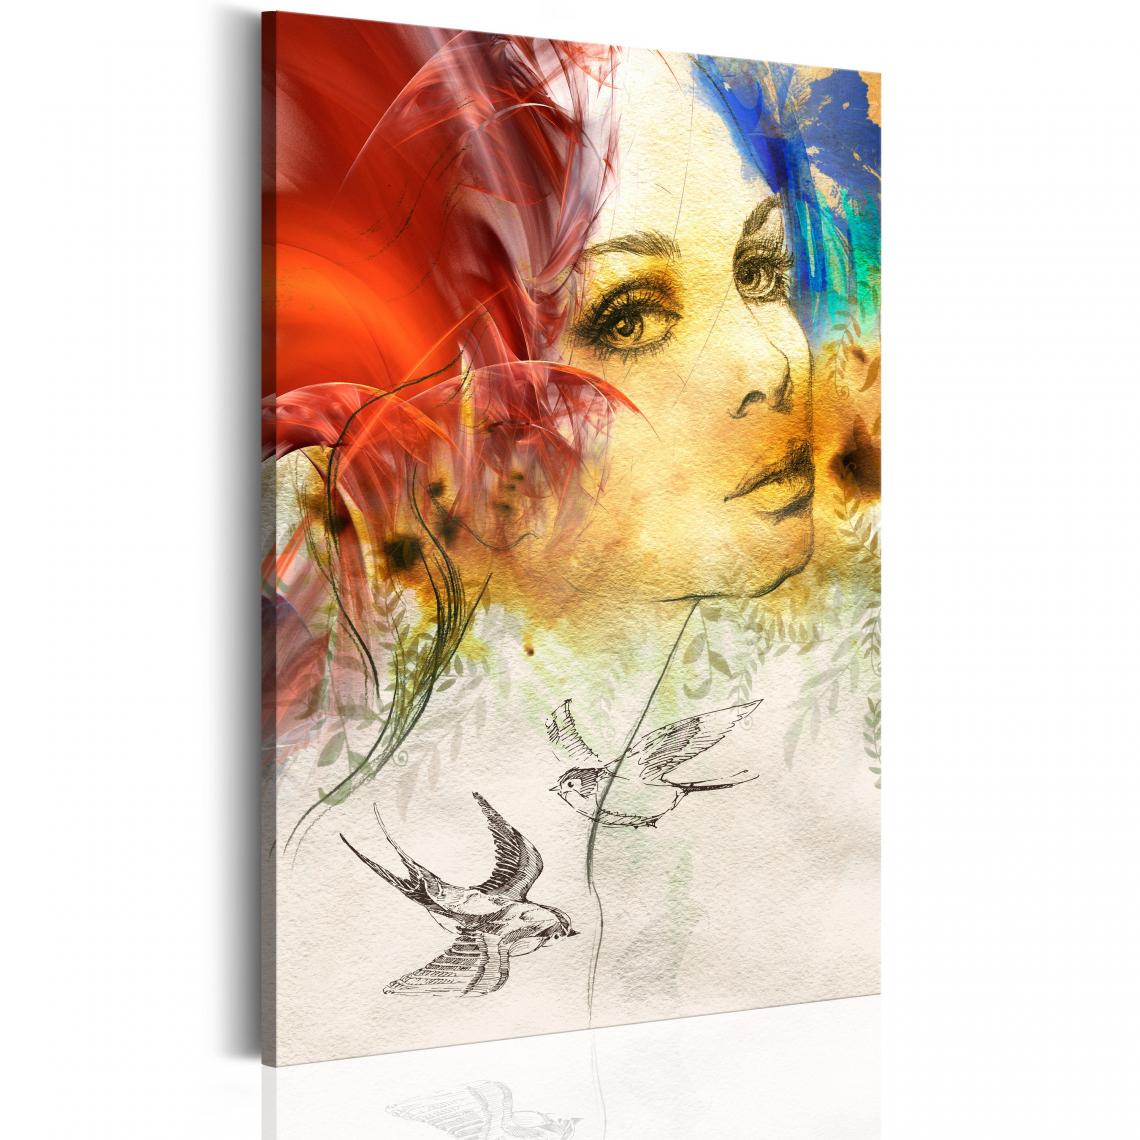 Decoshop26 - Tableau sur toile décoration murale image imprimée cadre en bois à suspendre Femme ardente 60x90 cm 11_0007532 - Tableaux, peintures